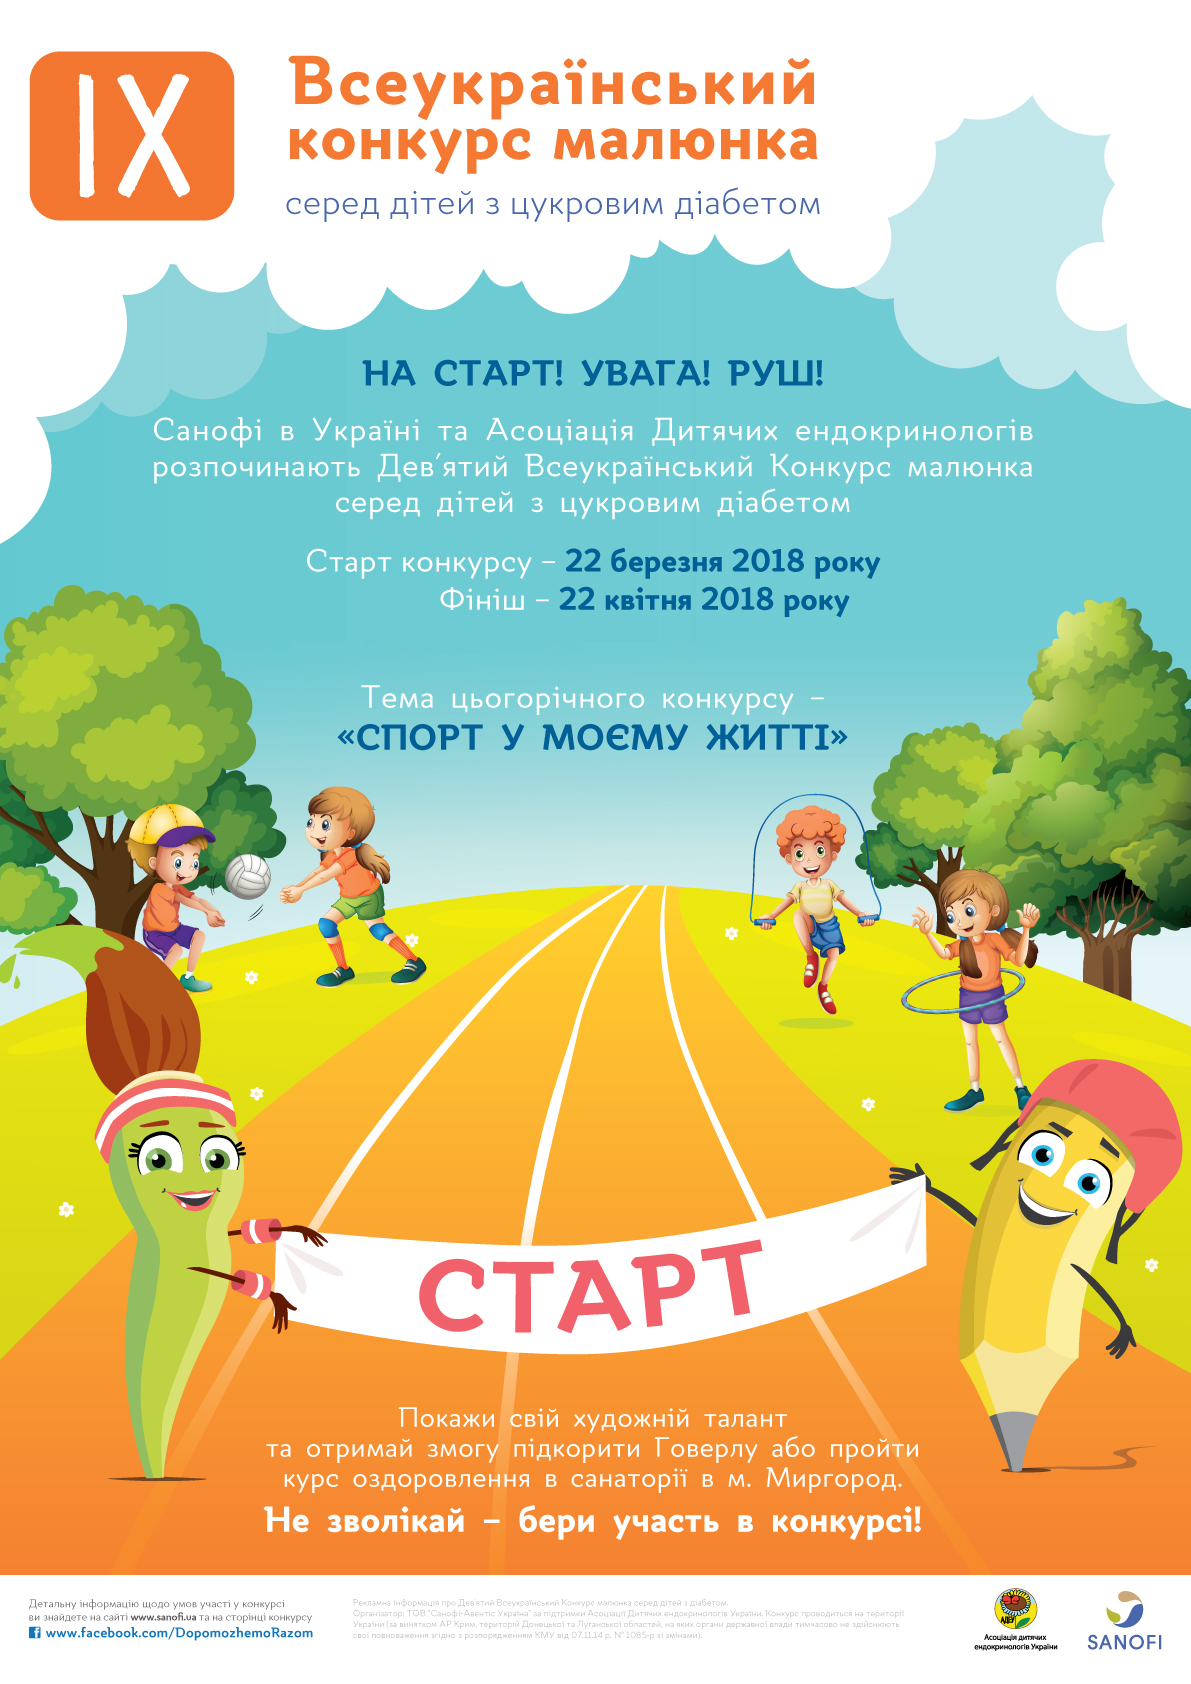  Всеукраїнський конкурс малюнка серед дітей з цукровим діабетом